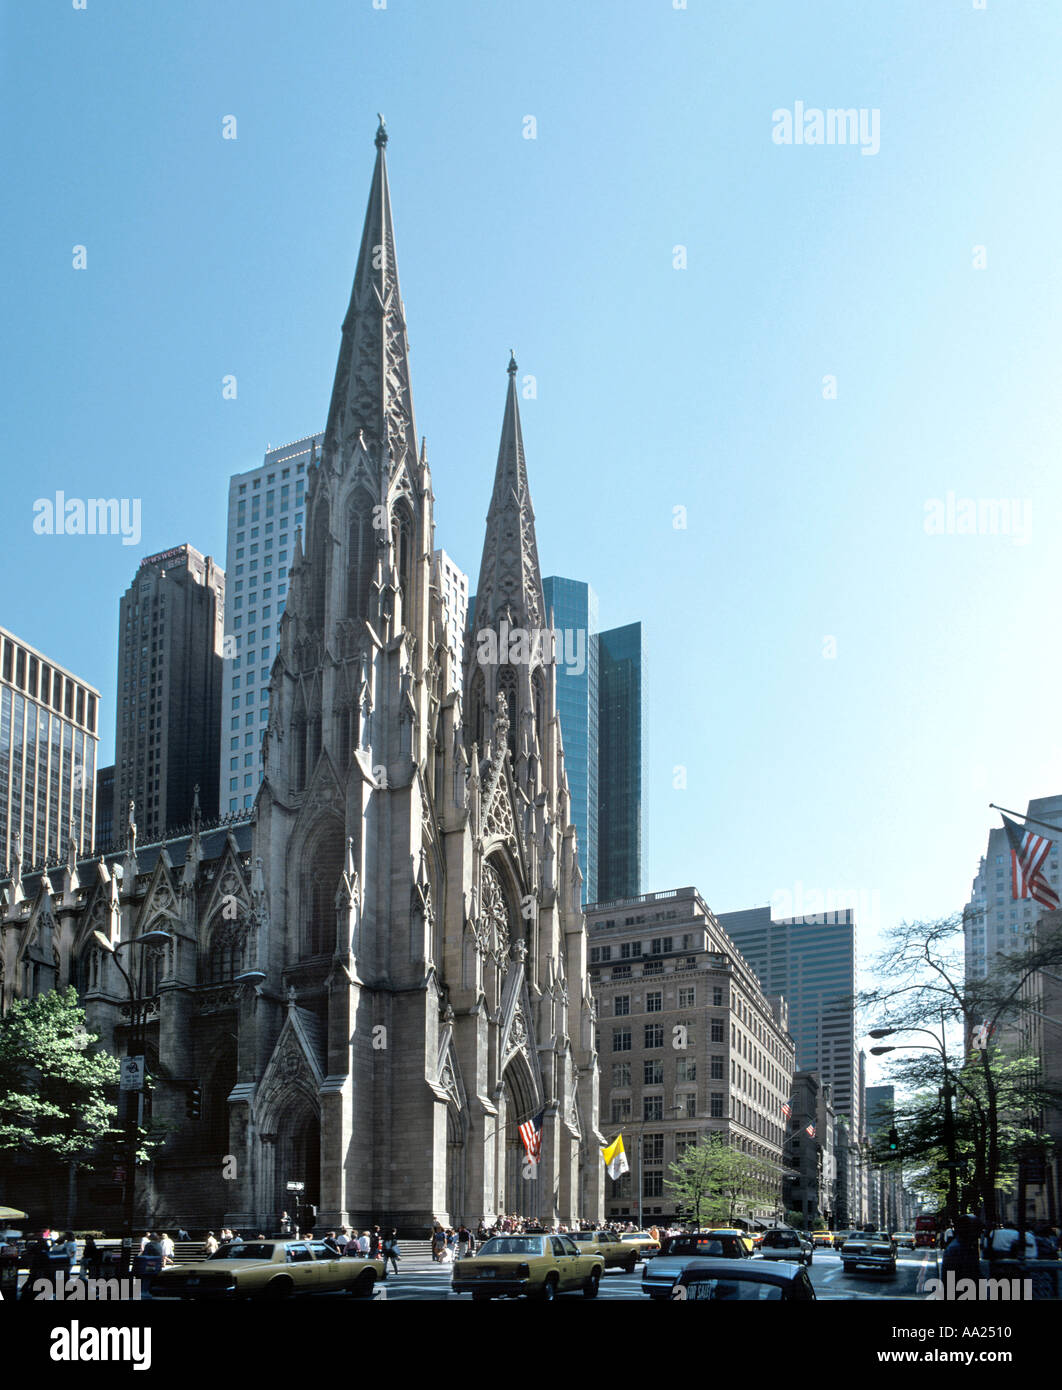 St Patrick's Cathedral, 5th Avenue, New York City, NY, USA Stock Photo